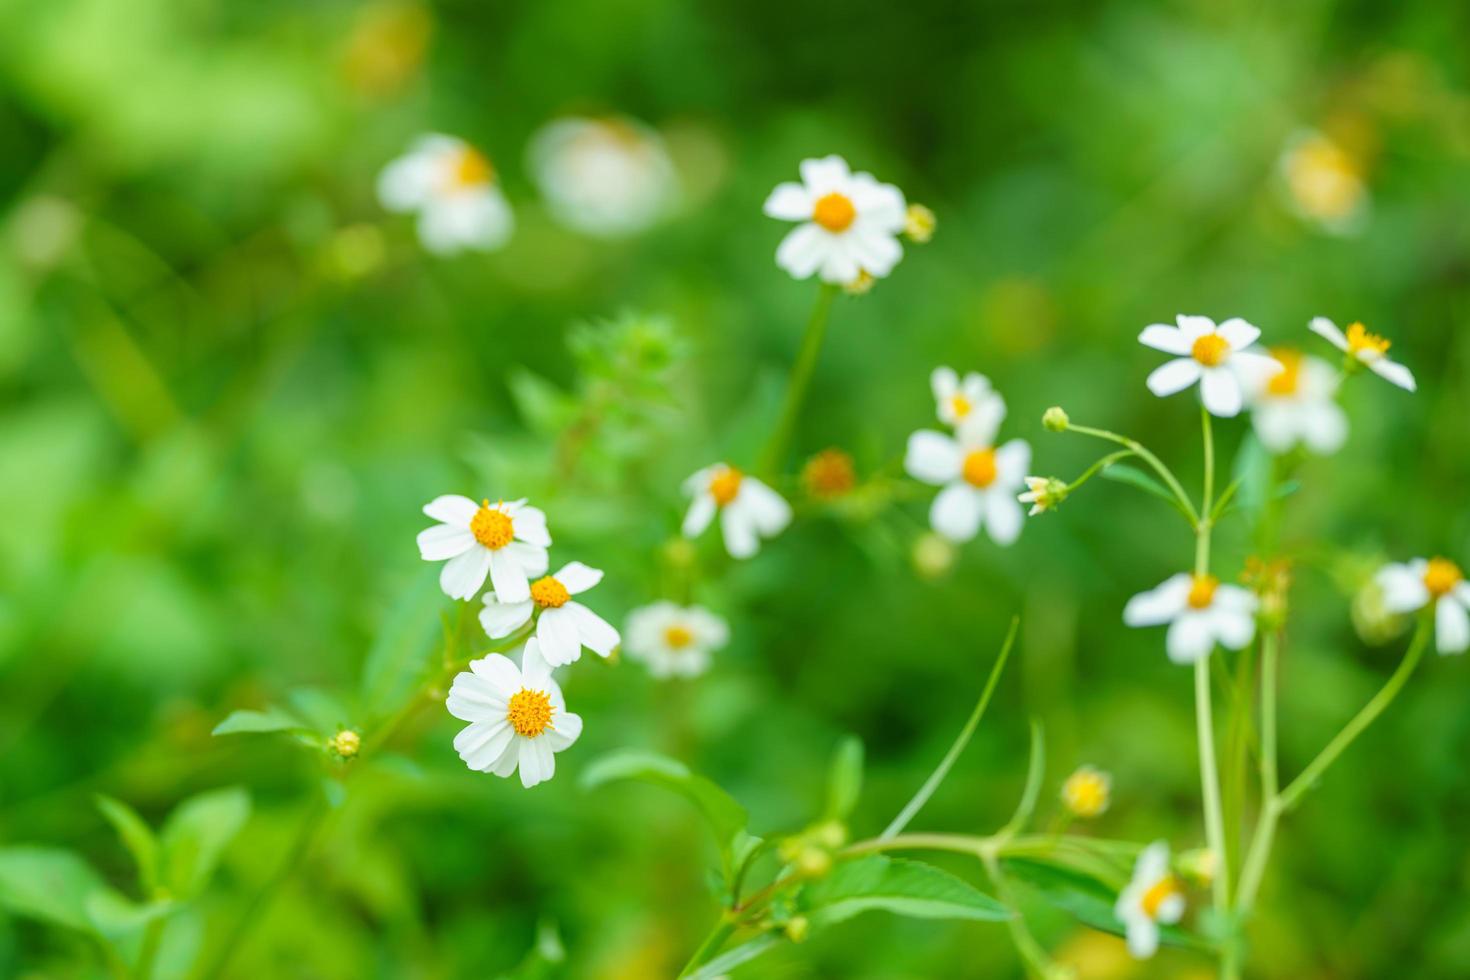 Hãy chiêm ngưỡng hình ảnh hoa nhỏ trắng đang khoe sắc trên nền tảng xanh tươi của cỏ cây. Chúng sẽ đem lại cho bạn cảm giác dịu dàng, thanh tịnh và trong lành.